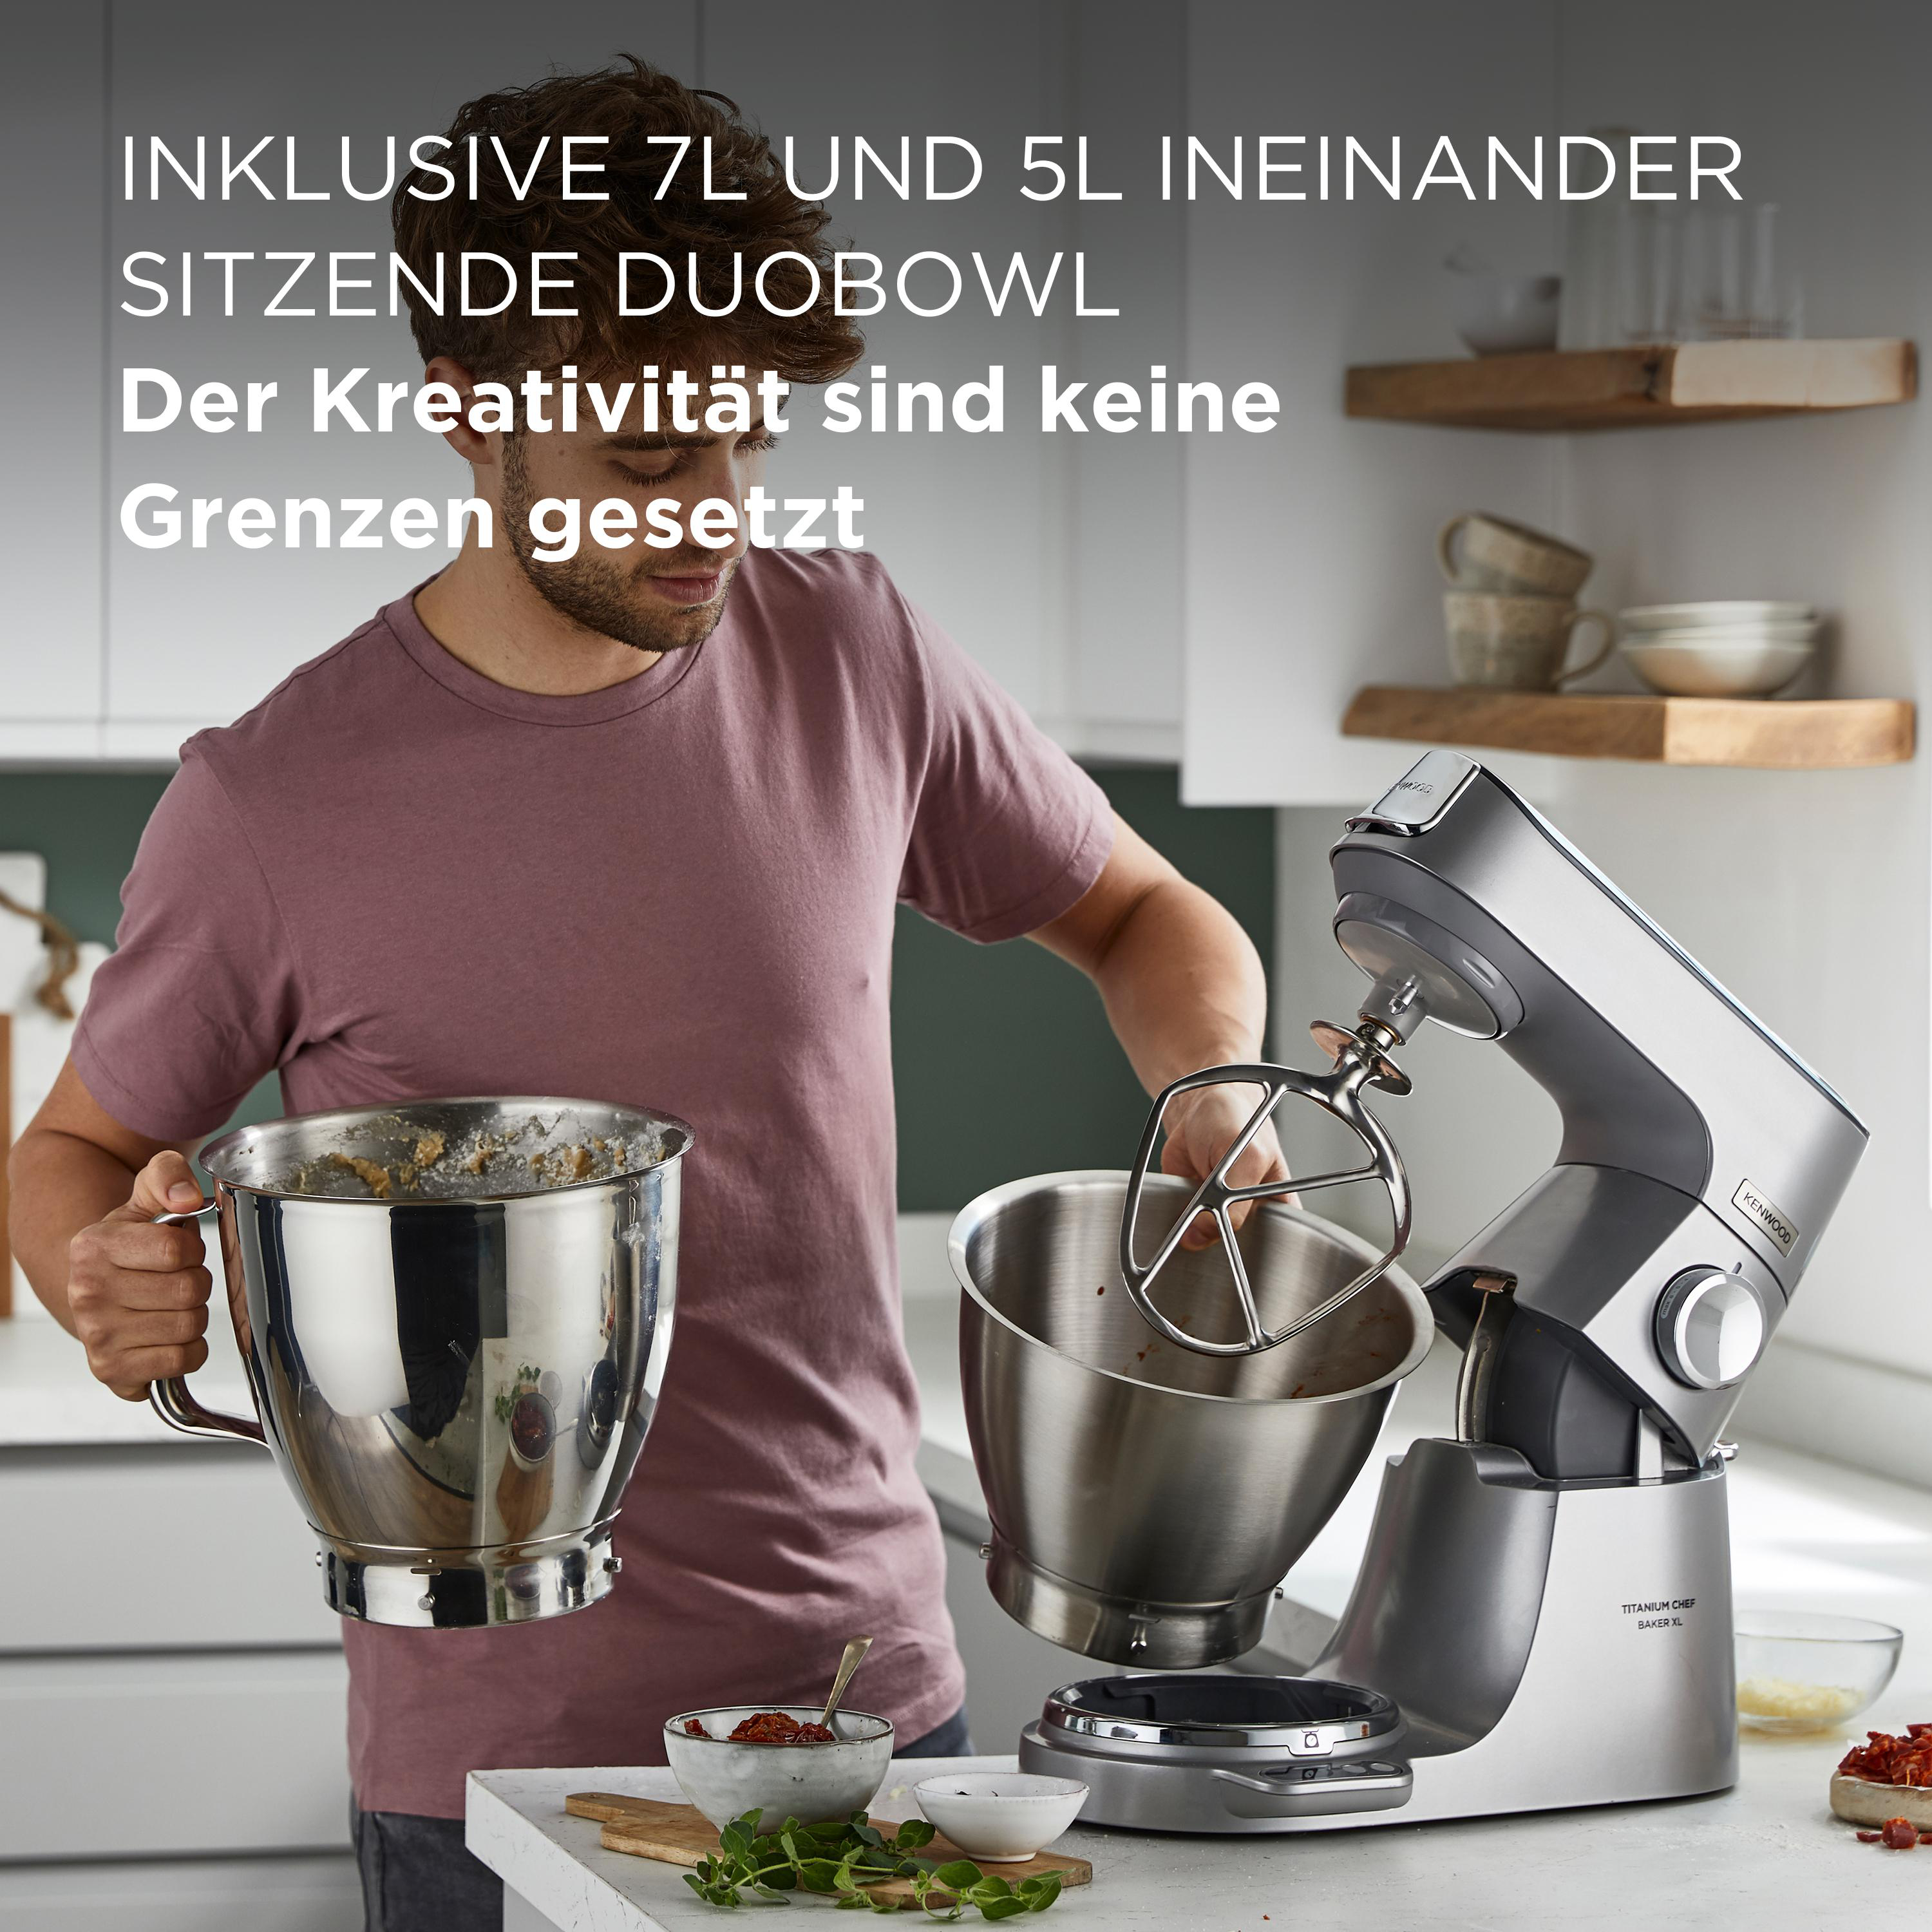 KENWOOD Titanium XL 1200 Watt) Chef Küchenmaschine 7 Baker l, (Rührschüsselkapazität: KVL85.004SI Silber